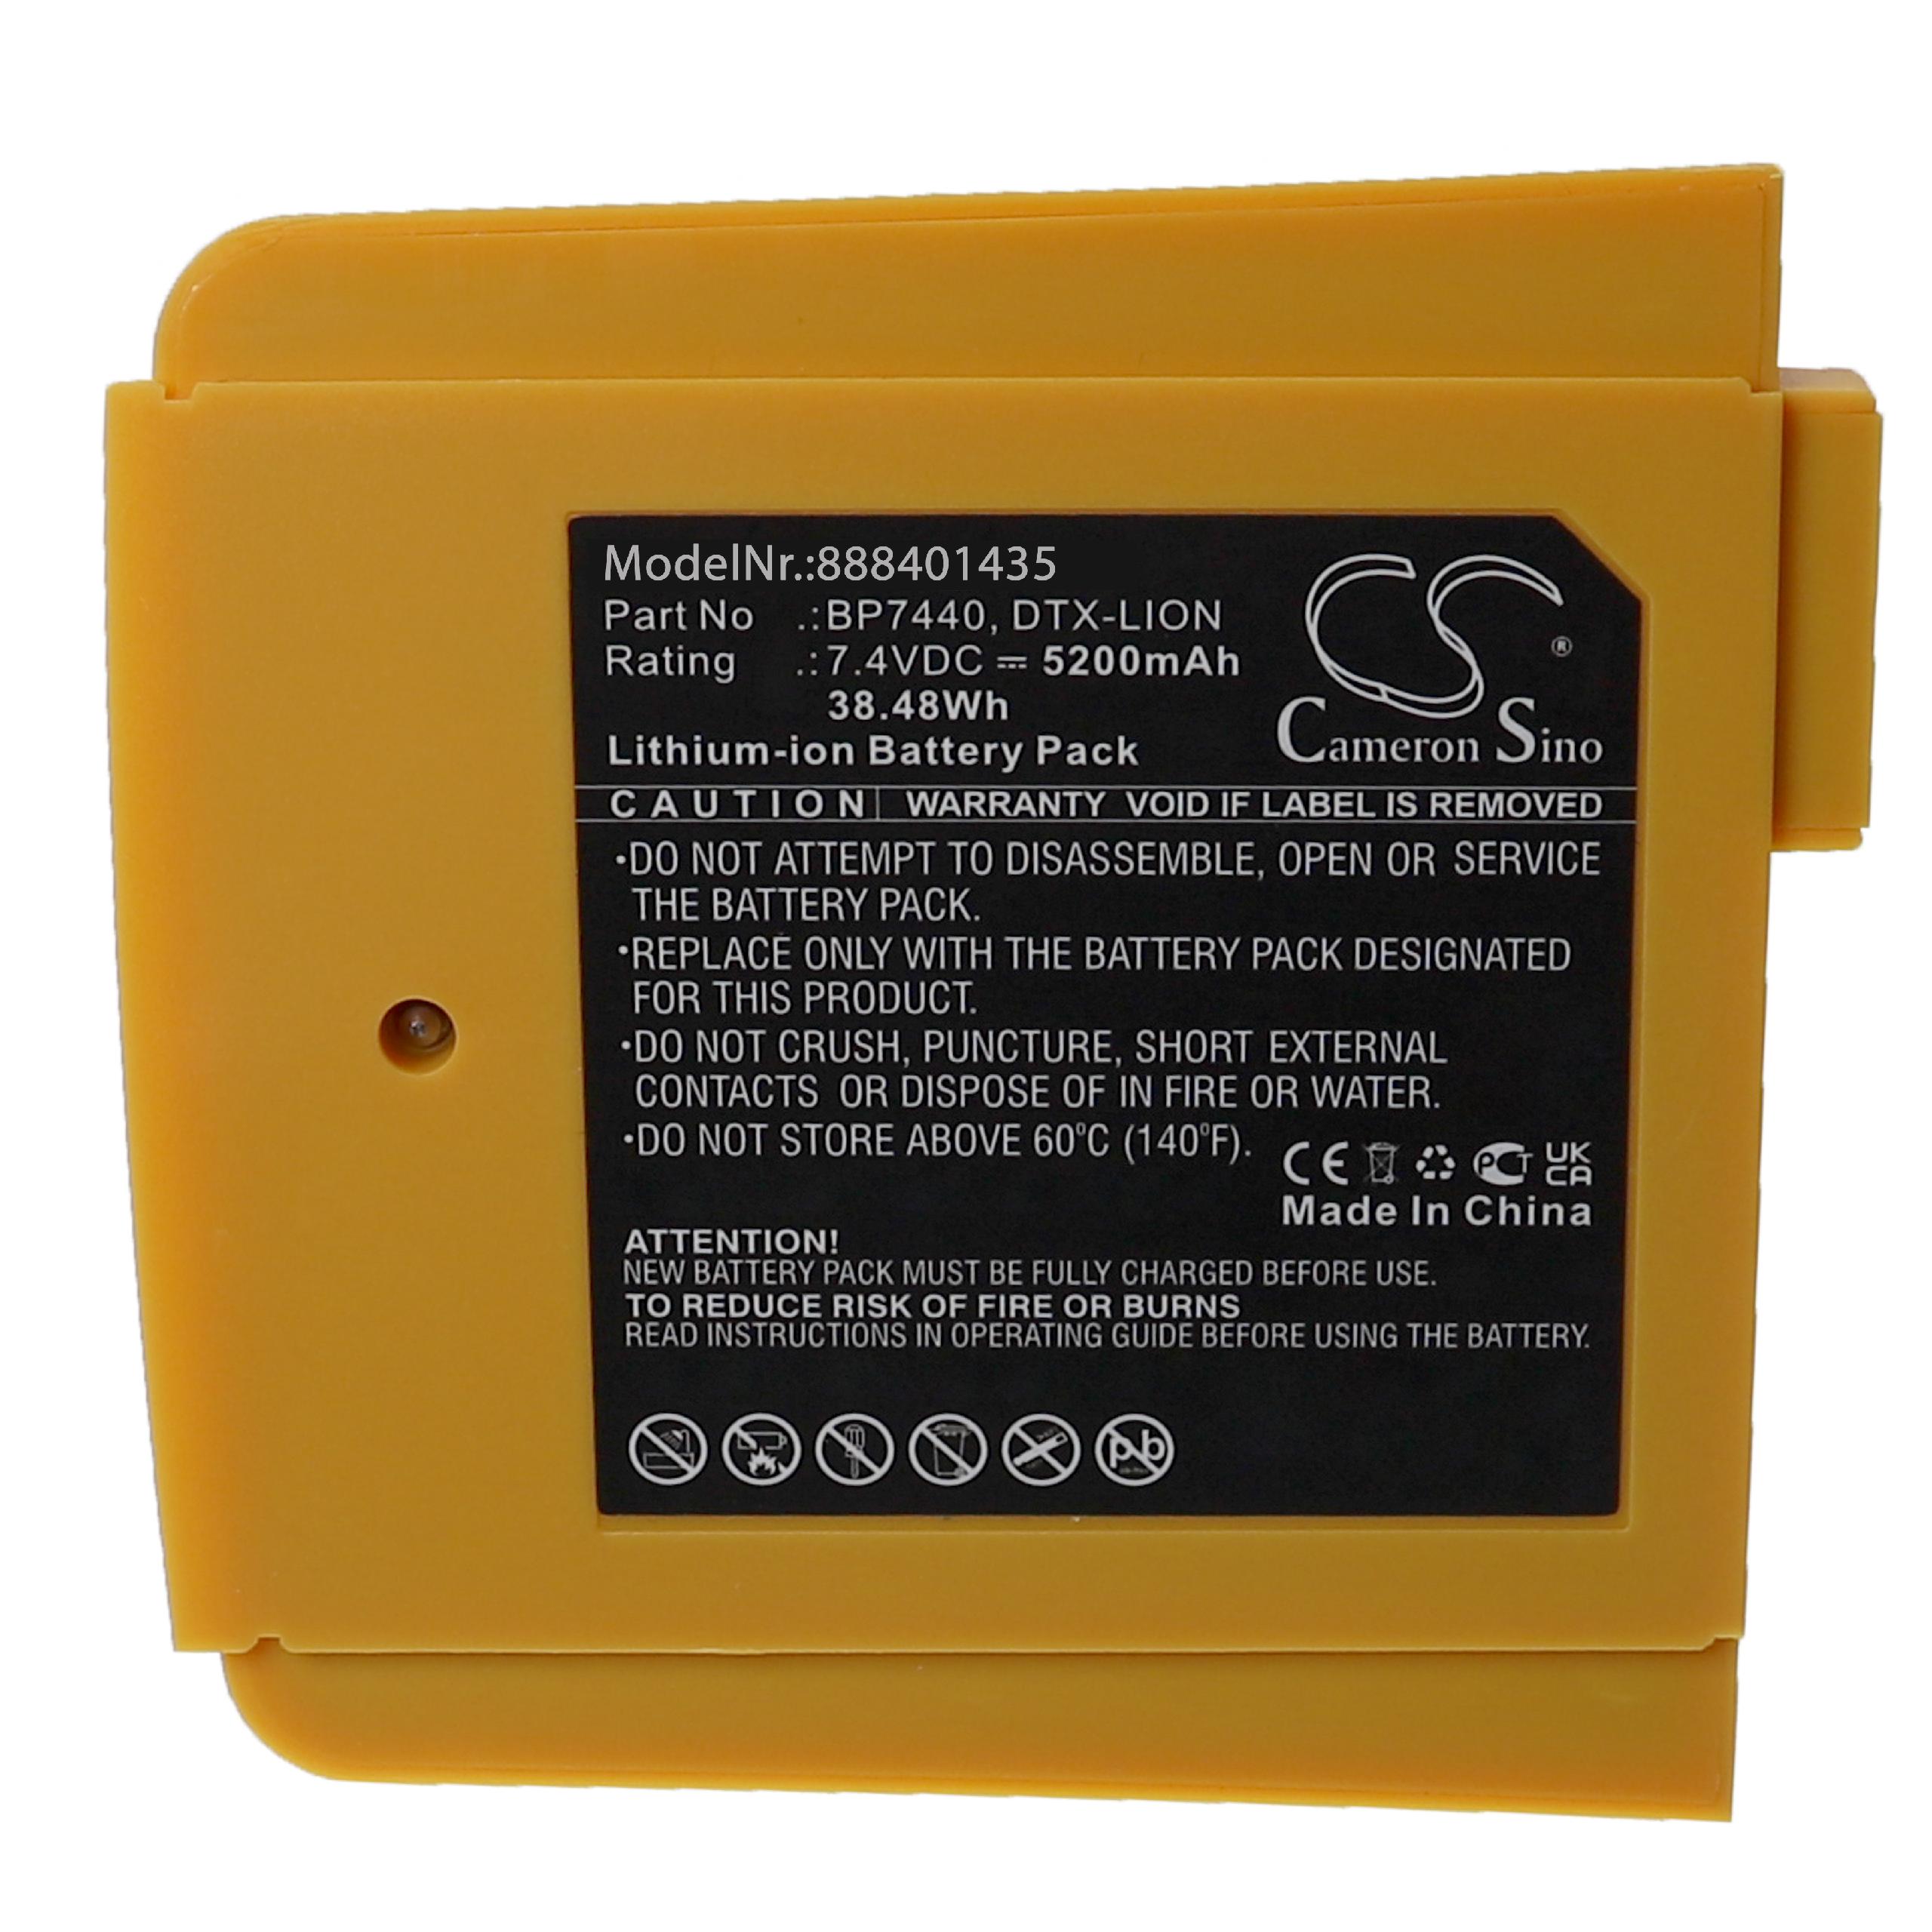 Batterie remplace Fluke DTX-LION, BP7440 pour outil de mesure - 5200mAh 7,4V Li-ion